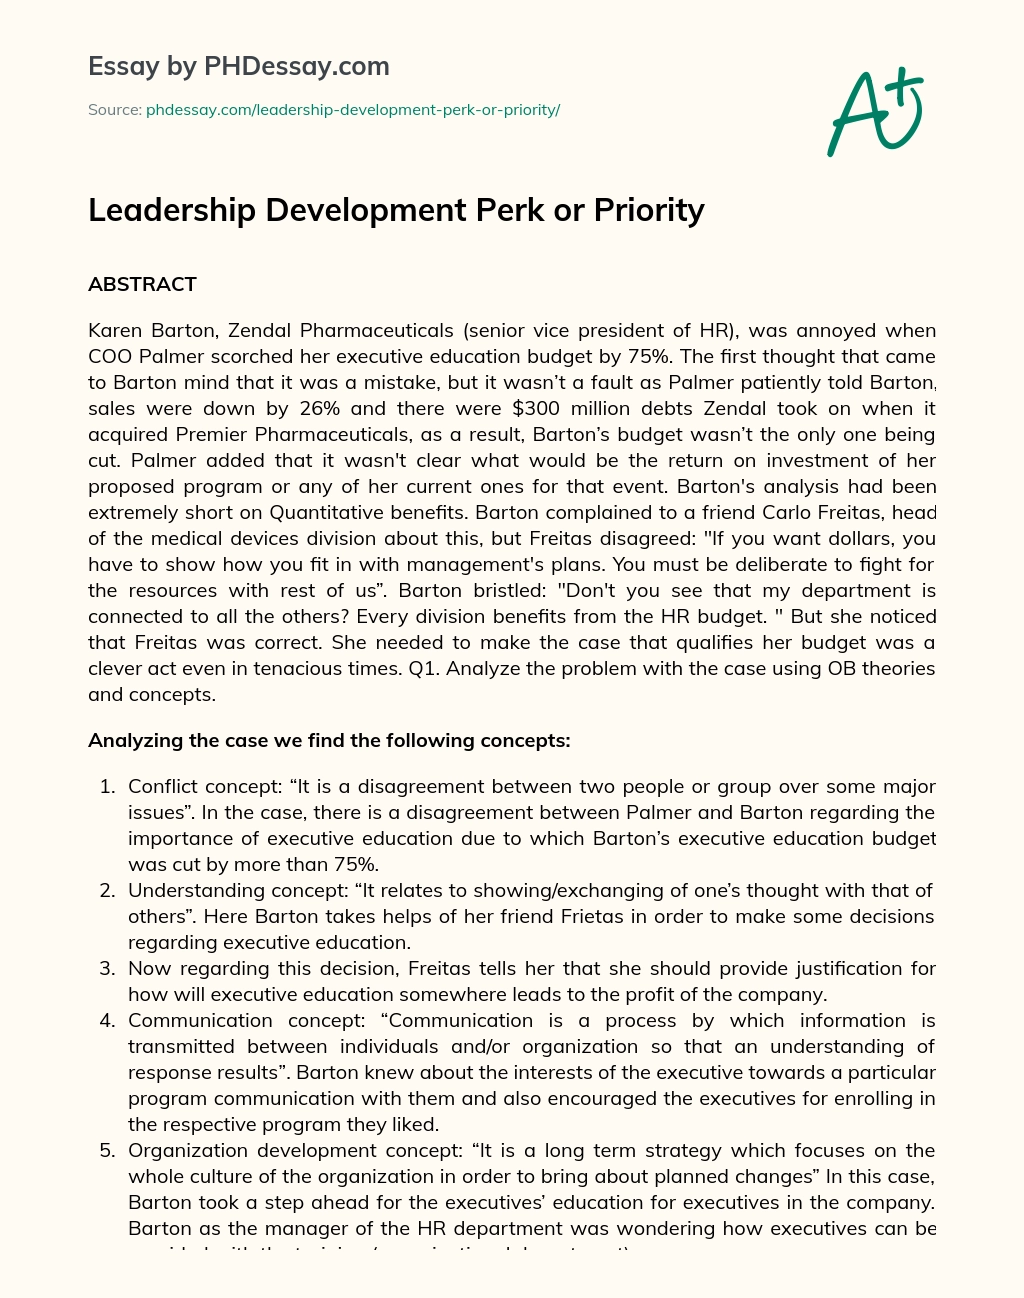 Leadership Development Perk or Priority essay